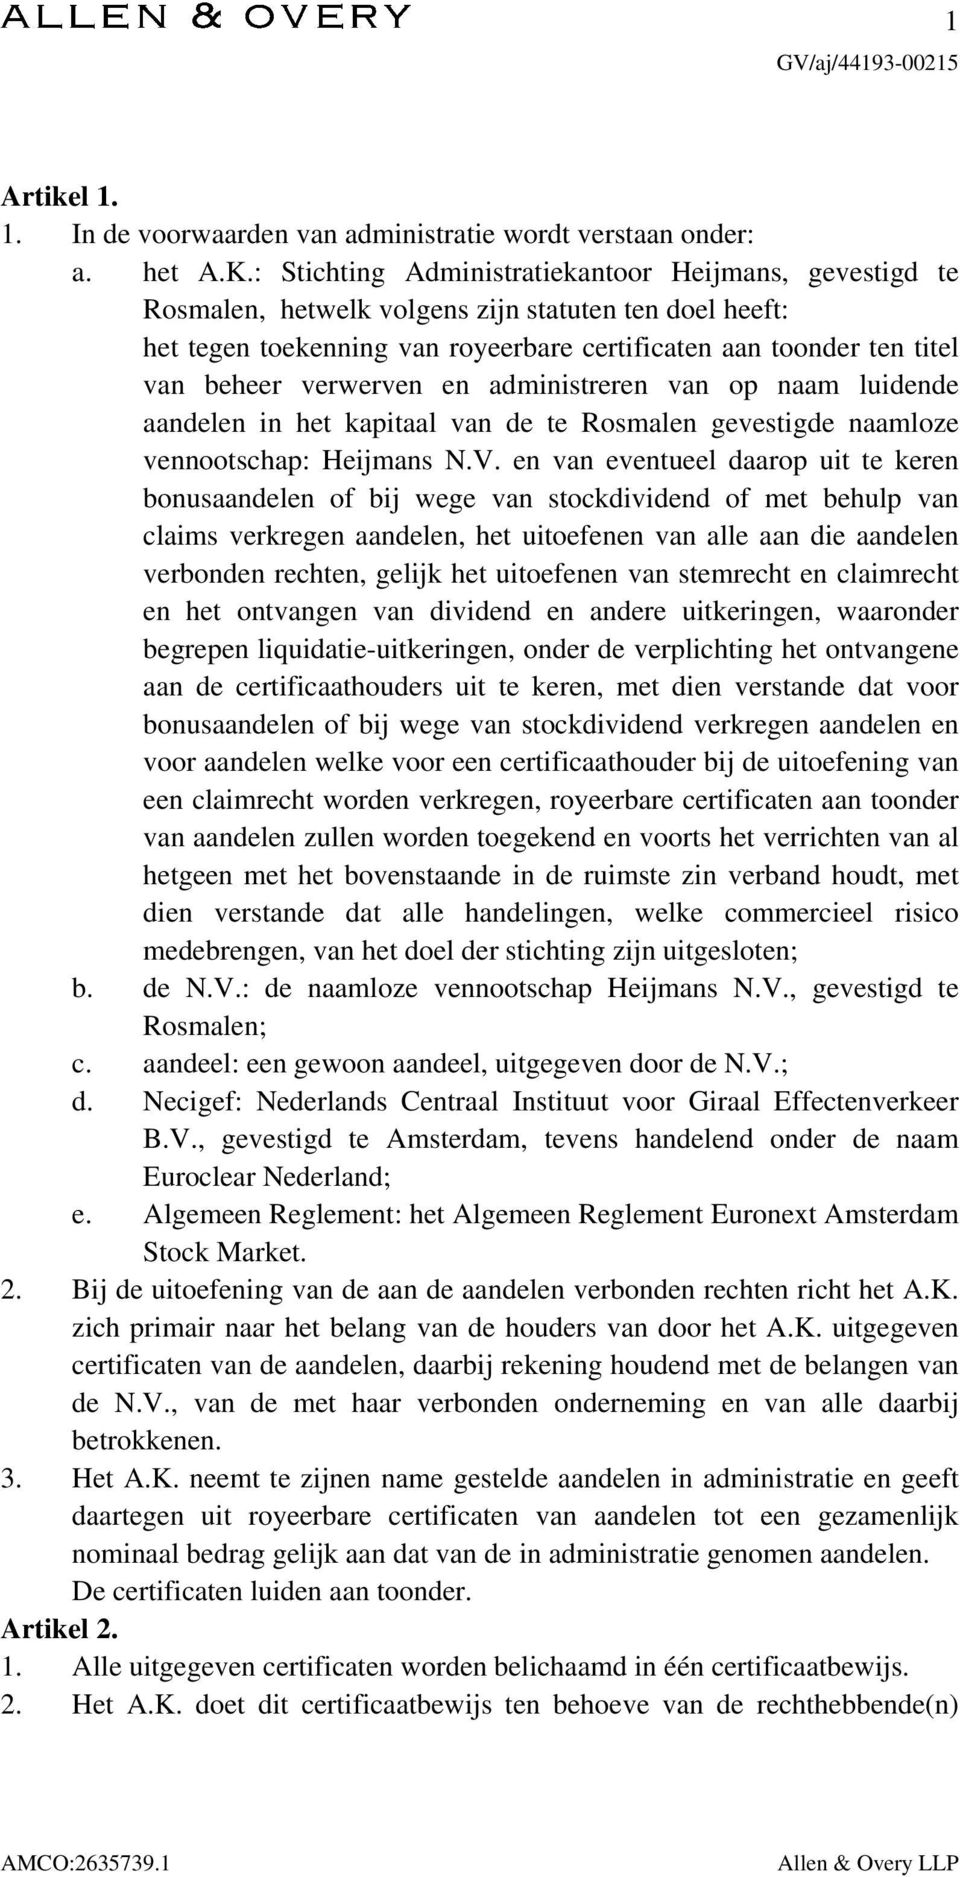 verwerven en administreren van op naam luidende aandelen in het kapitaal van de te Rosmalen gevestigde naamloze vennootschap: Heijmans N.V.